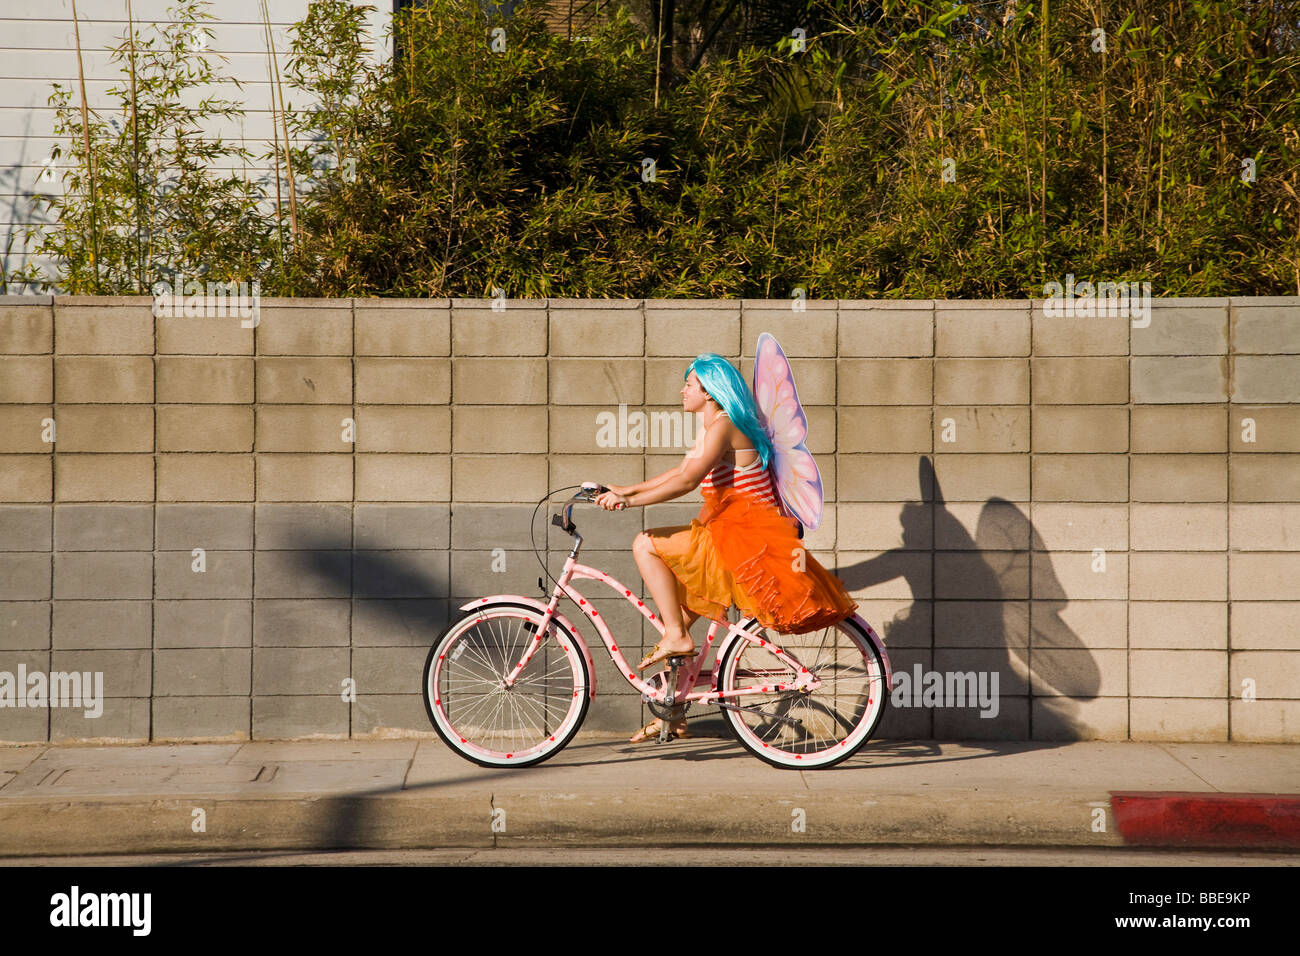 Radfahrer in einem Kostüm mit Engel Flügel Venice Beach Los Angeles County California Vereinigten Staaten von Amerika Stockfoto